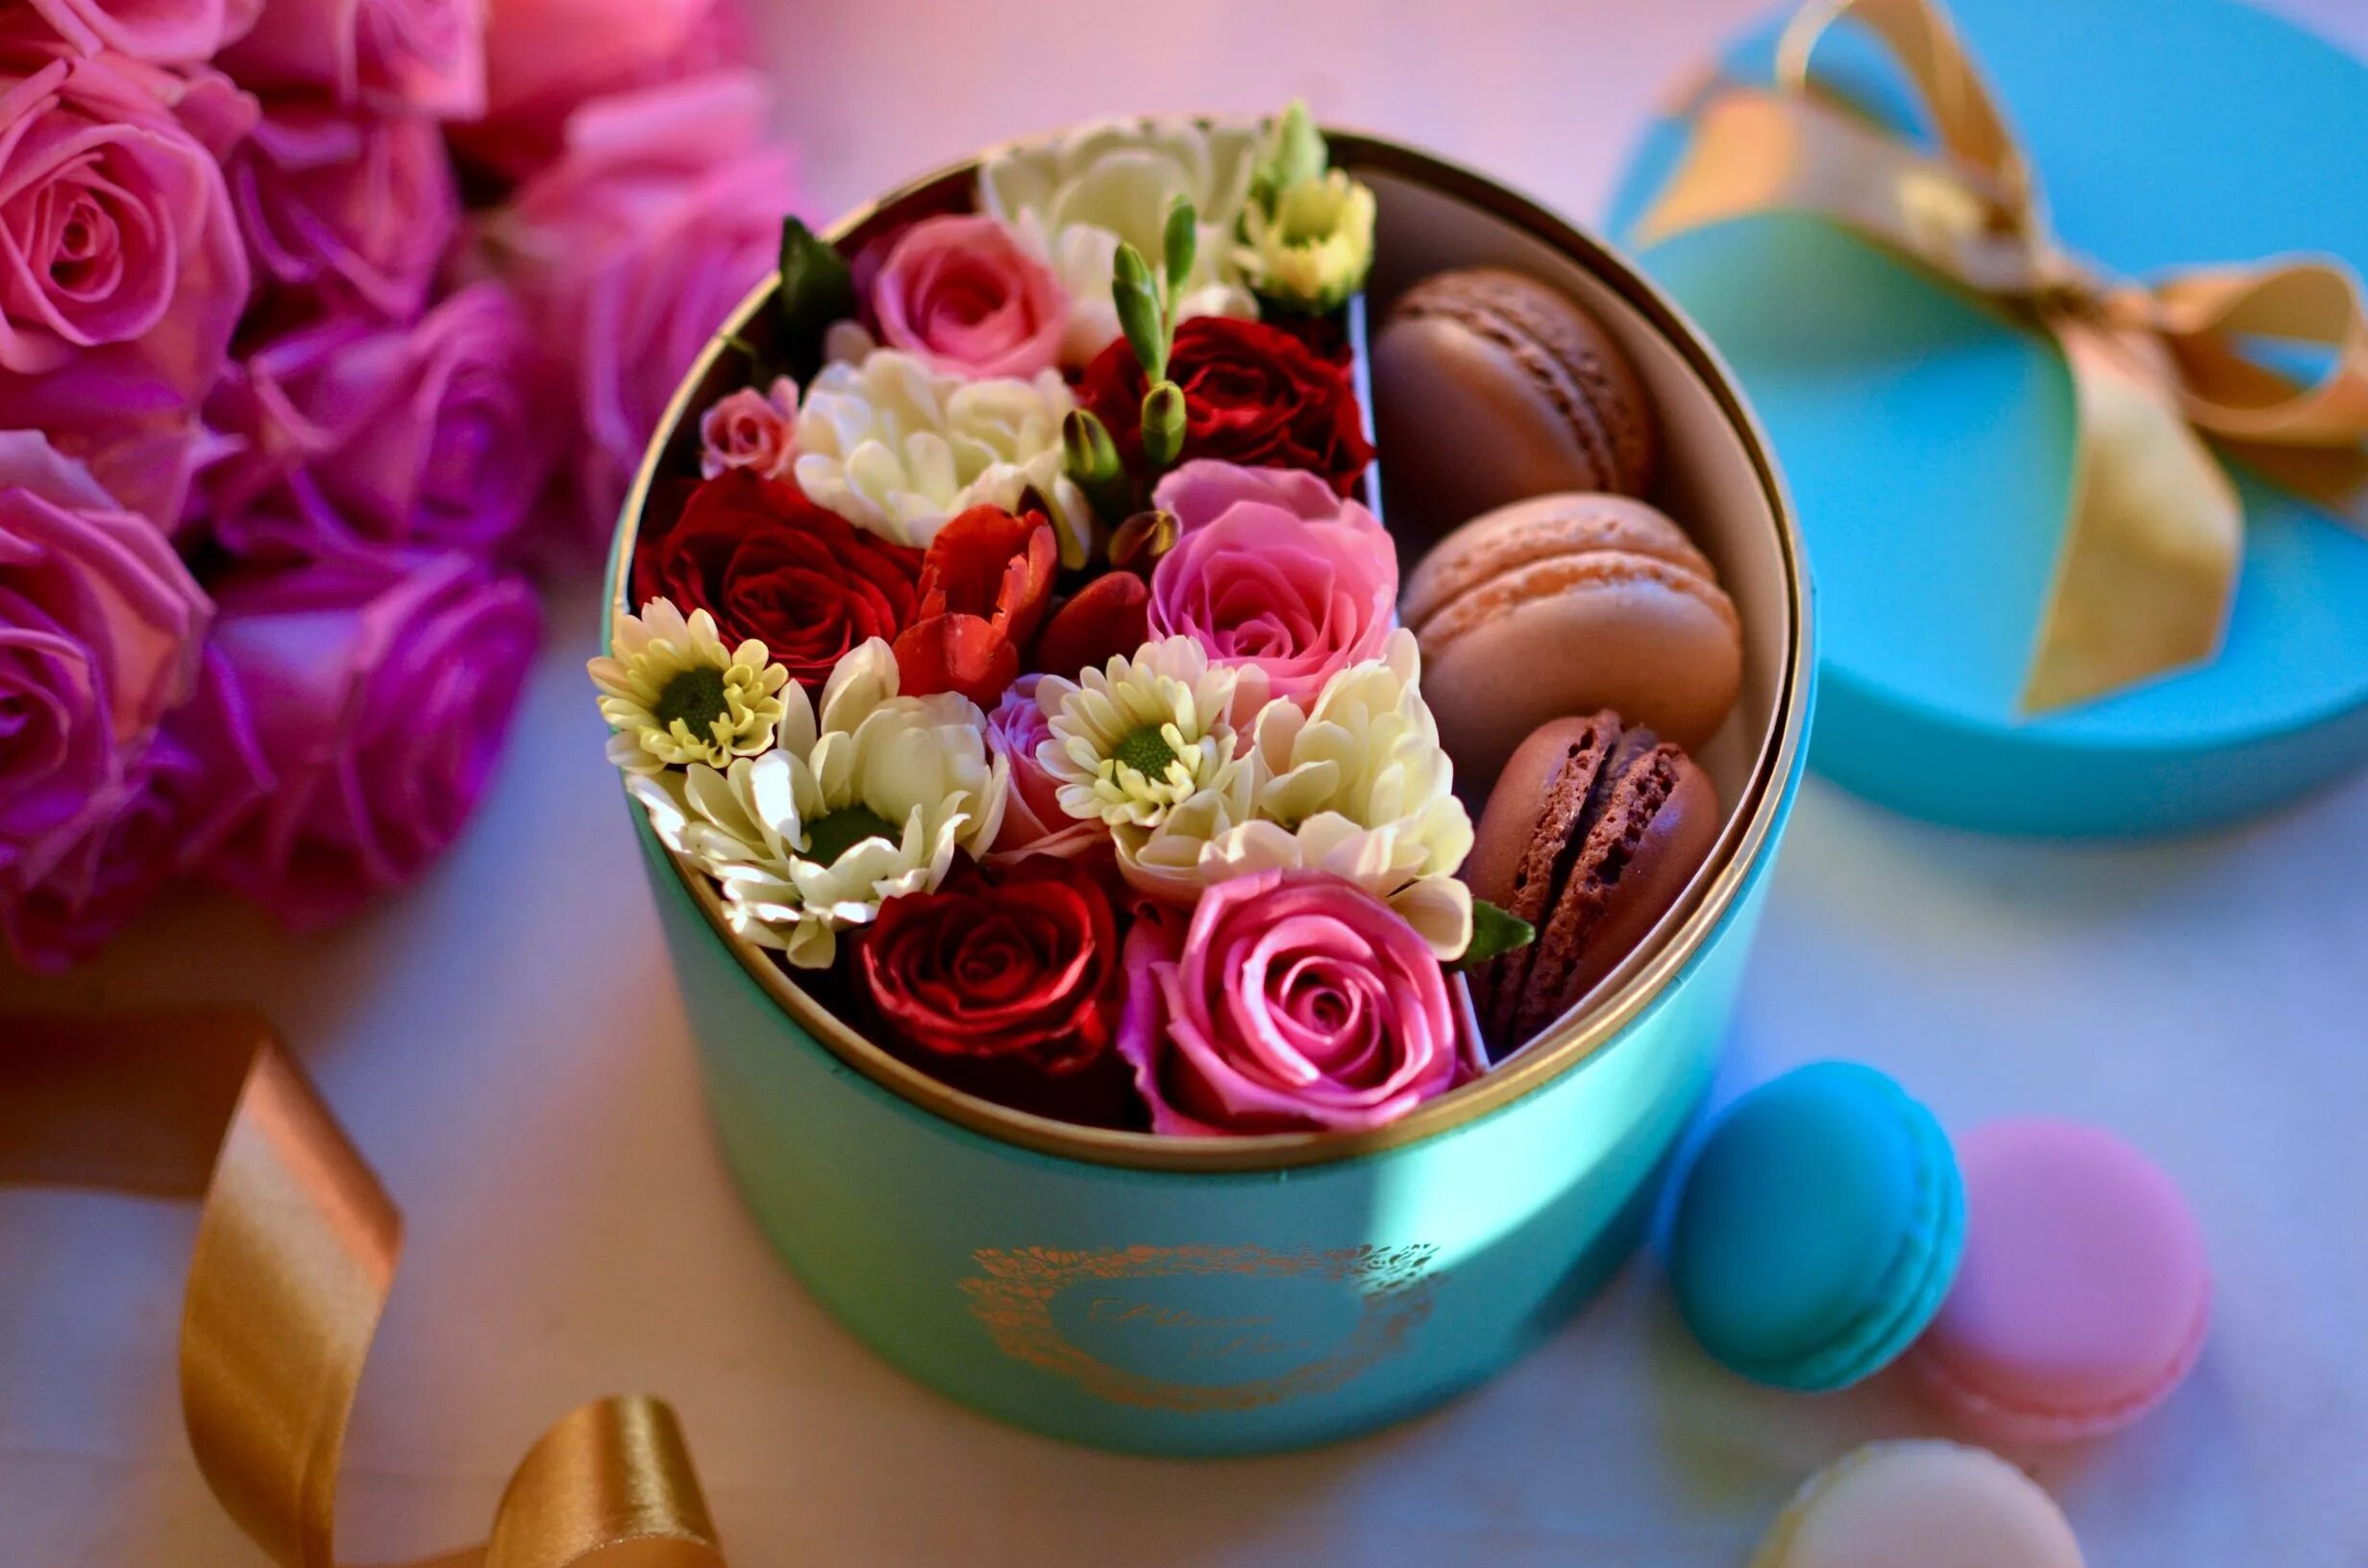 Нежность в подарок. Цветы в подарок. Цветы с конфетами. Цветы в коробке. Коробка с цветами и конфетами.